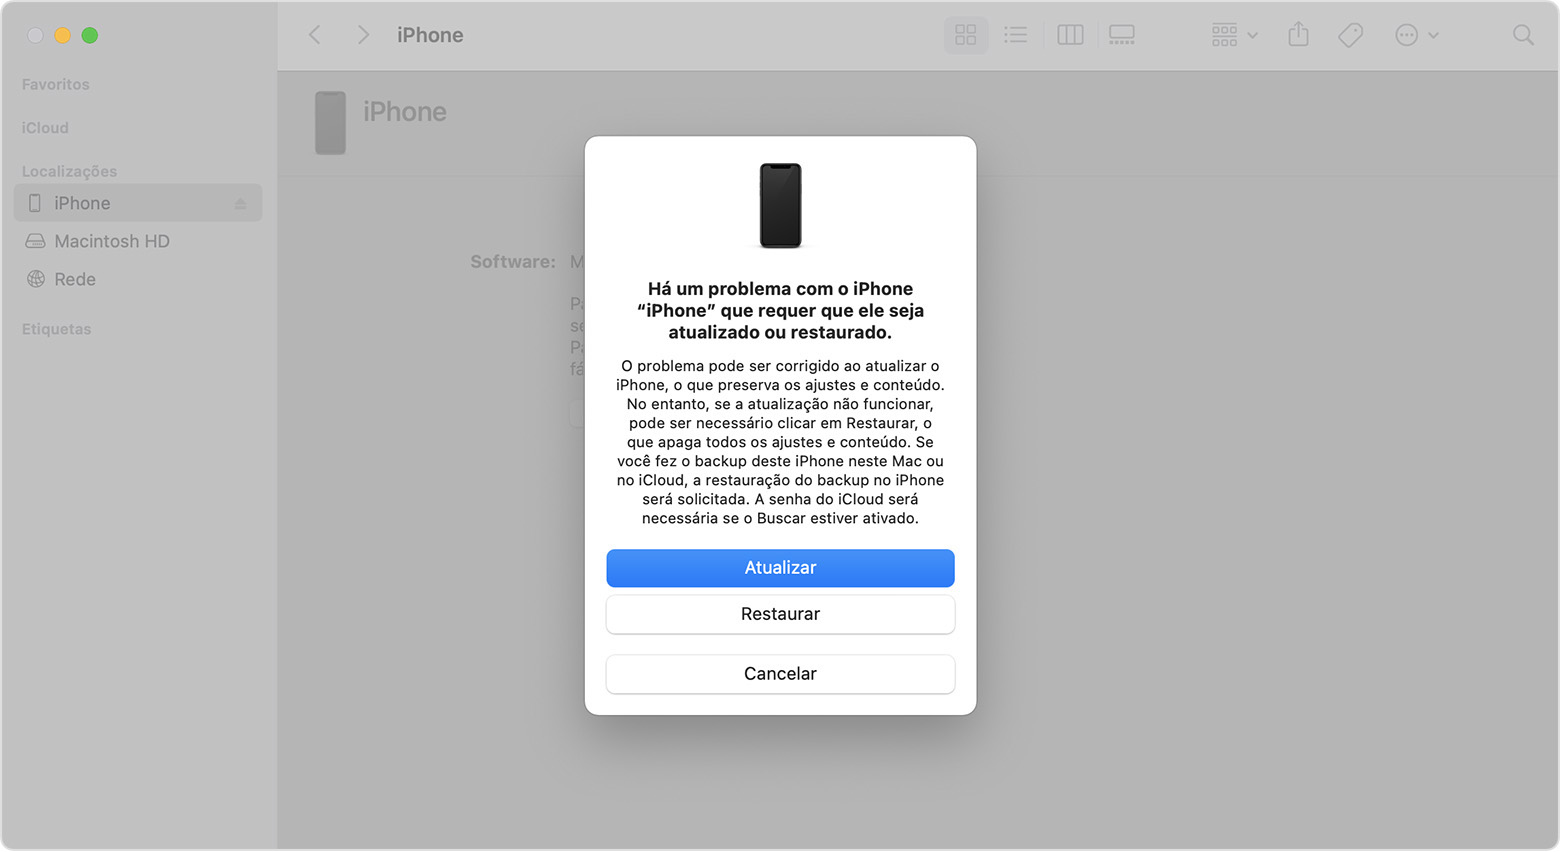 Janela do Finder em um Mac mostrando opções para restaurar ou atualizar o iPhone.